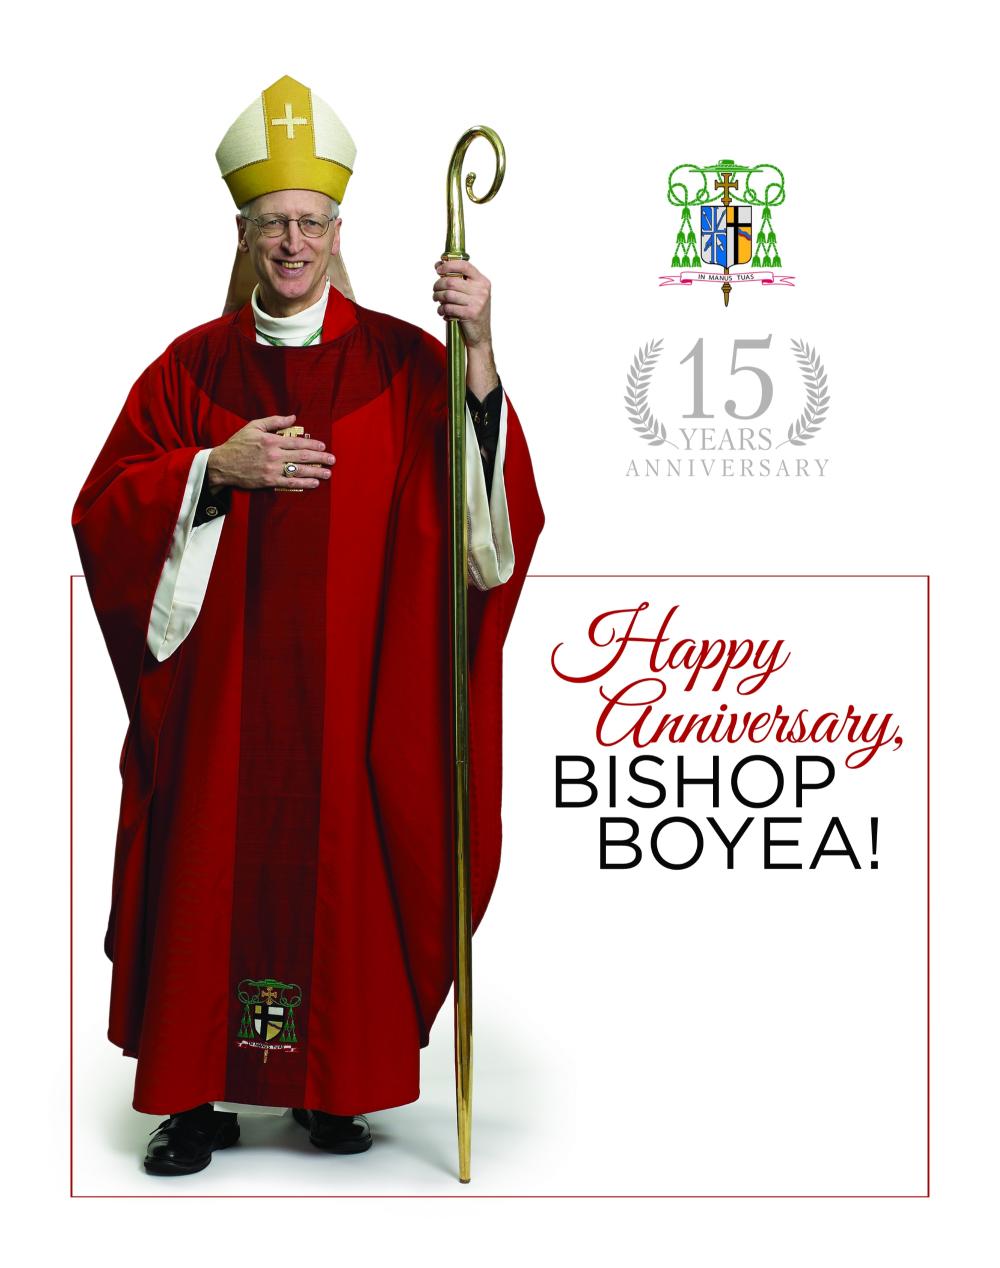 Happy Anniversary Bishop Boyea!